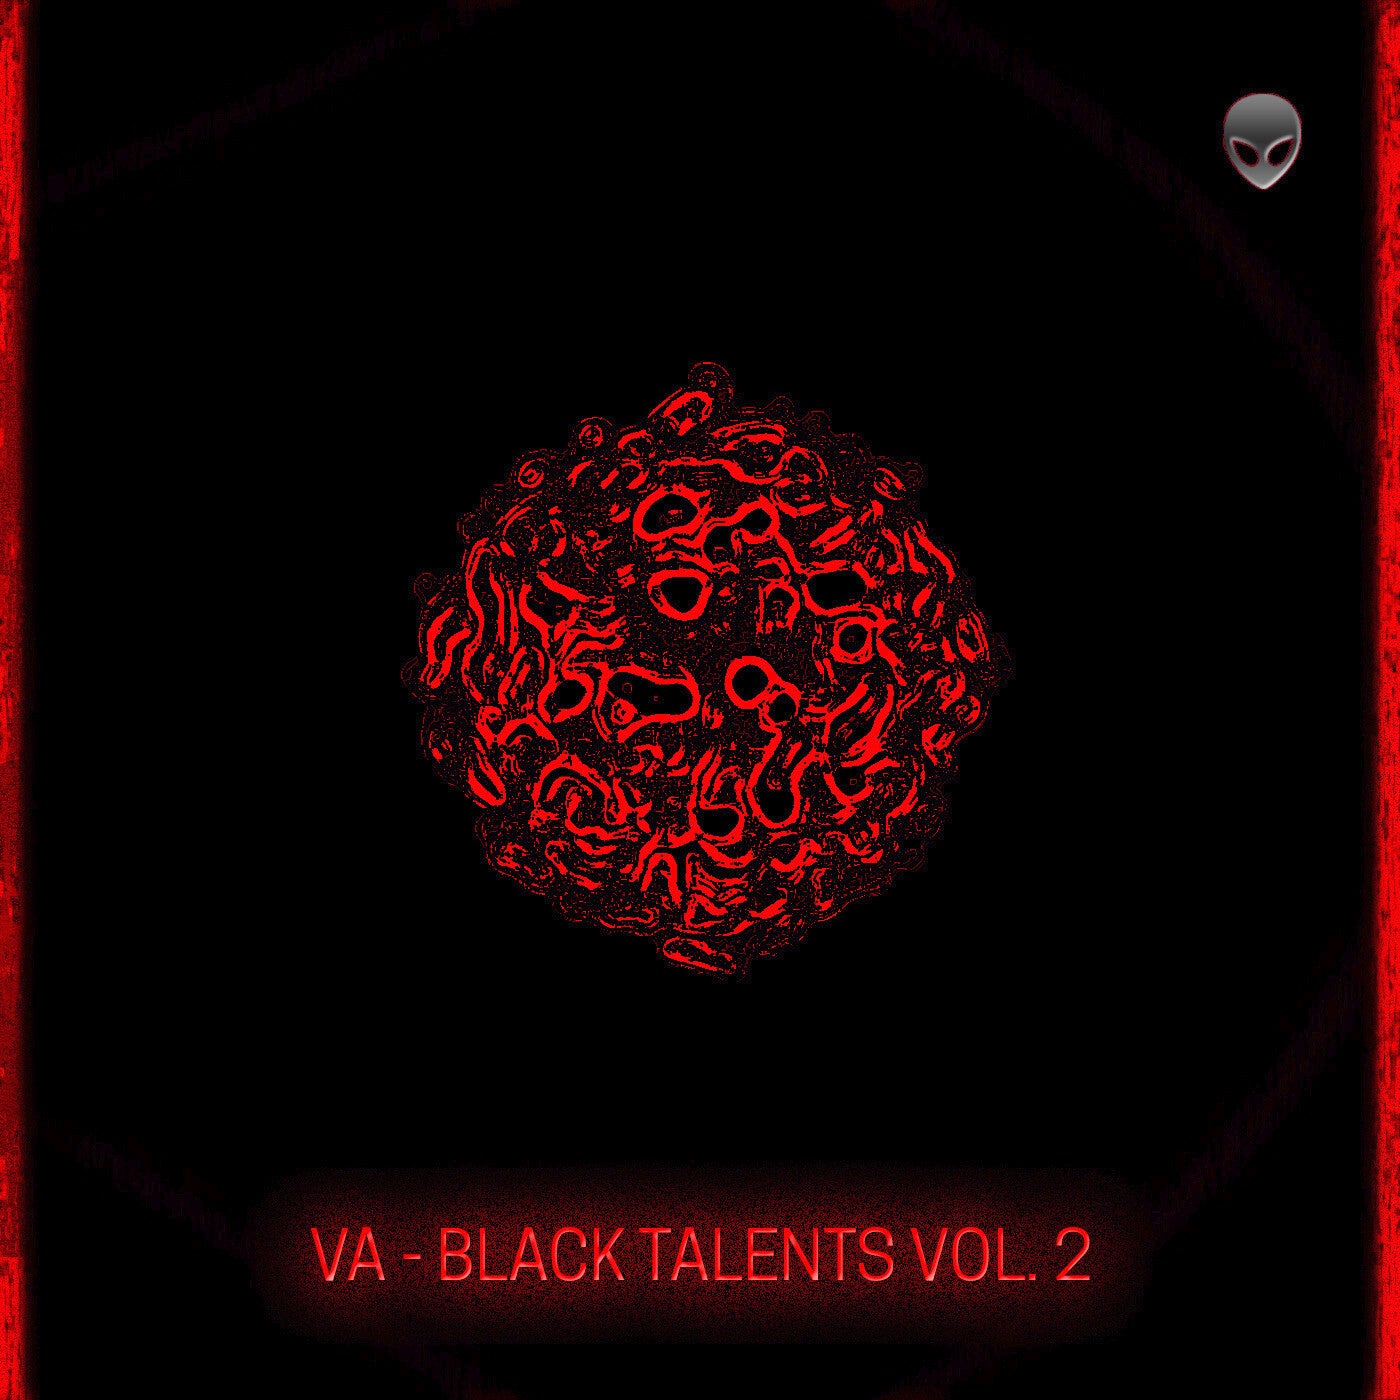 Black Talents Vol 2